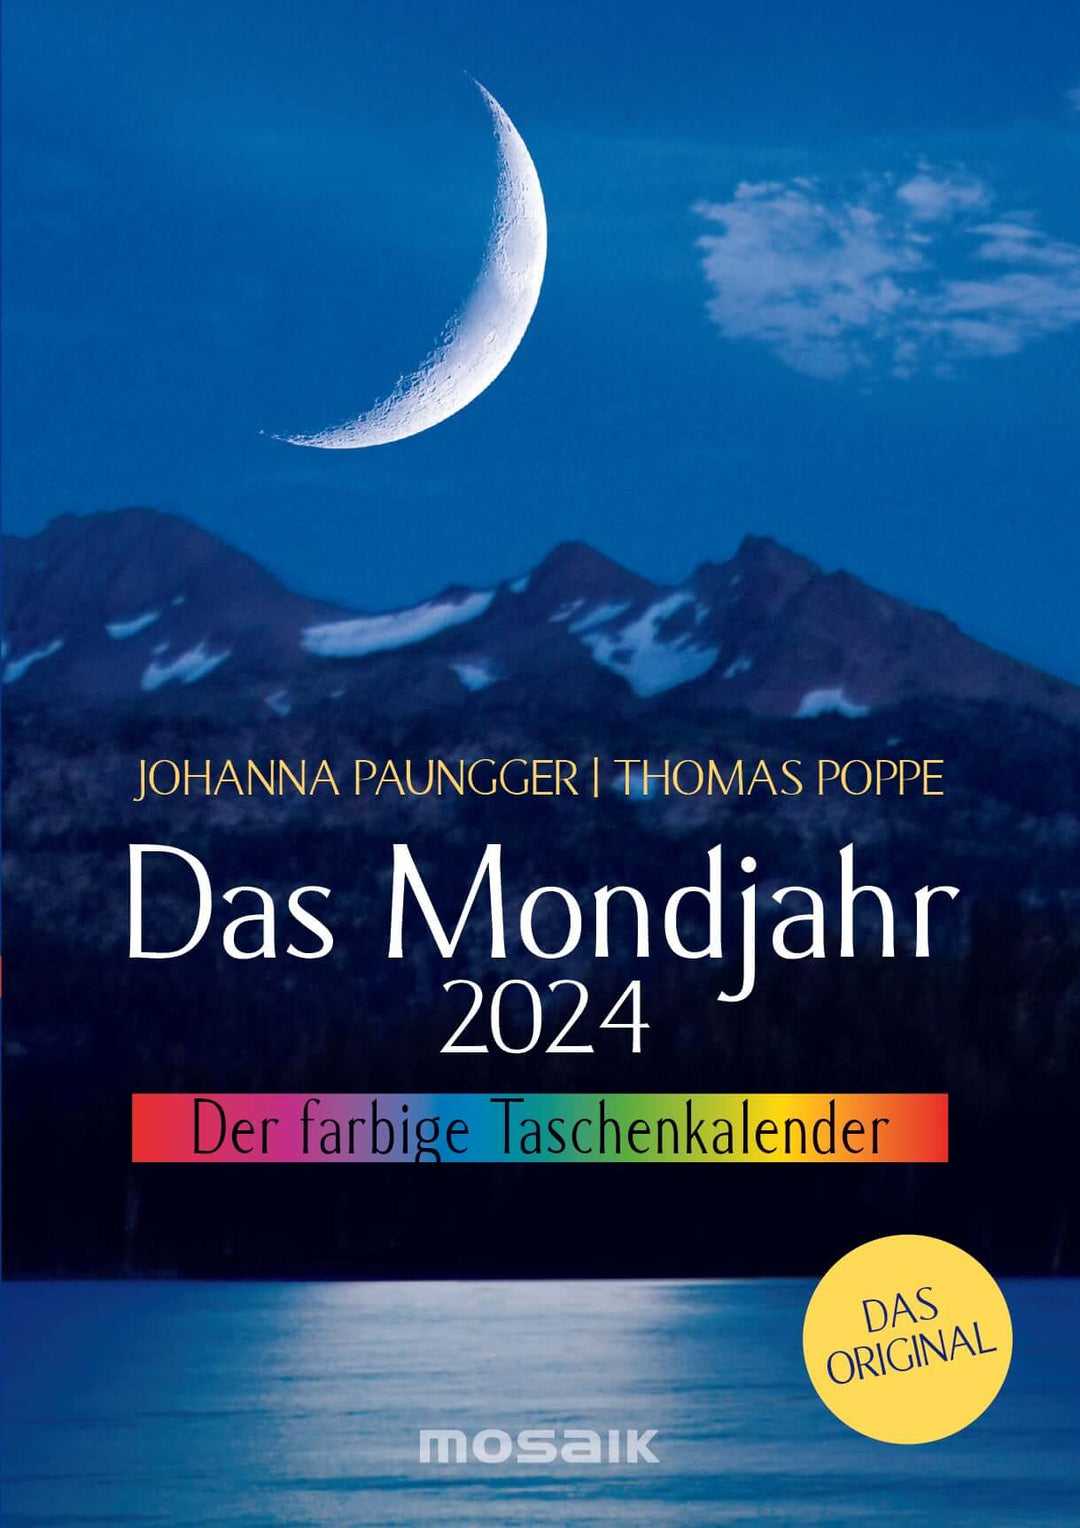 Das Mondjahr 2024 - Der farbige Taschenkalender | Mondversand